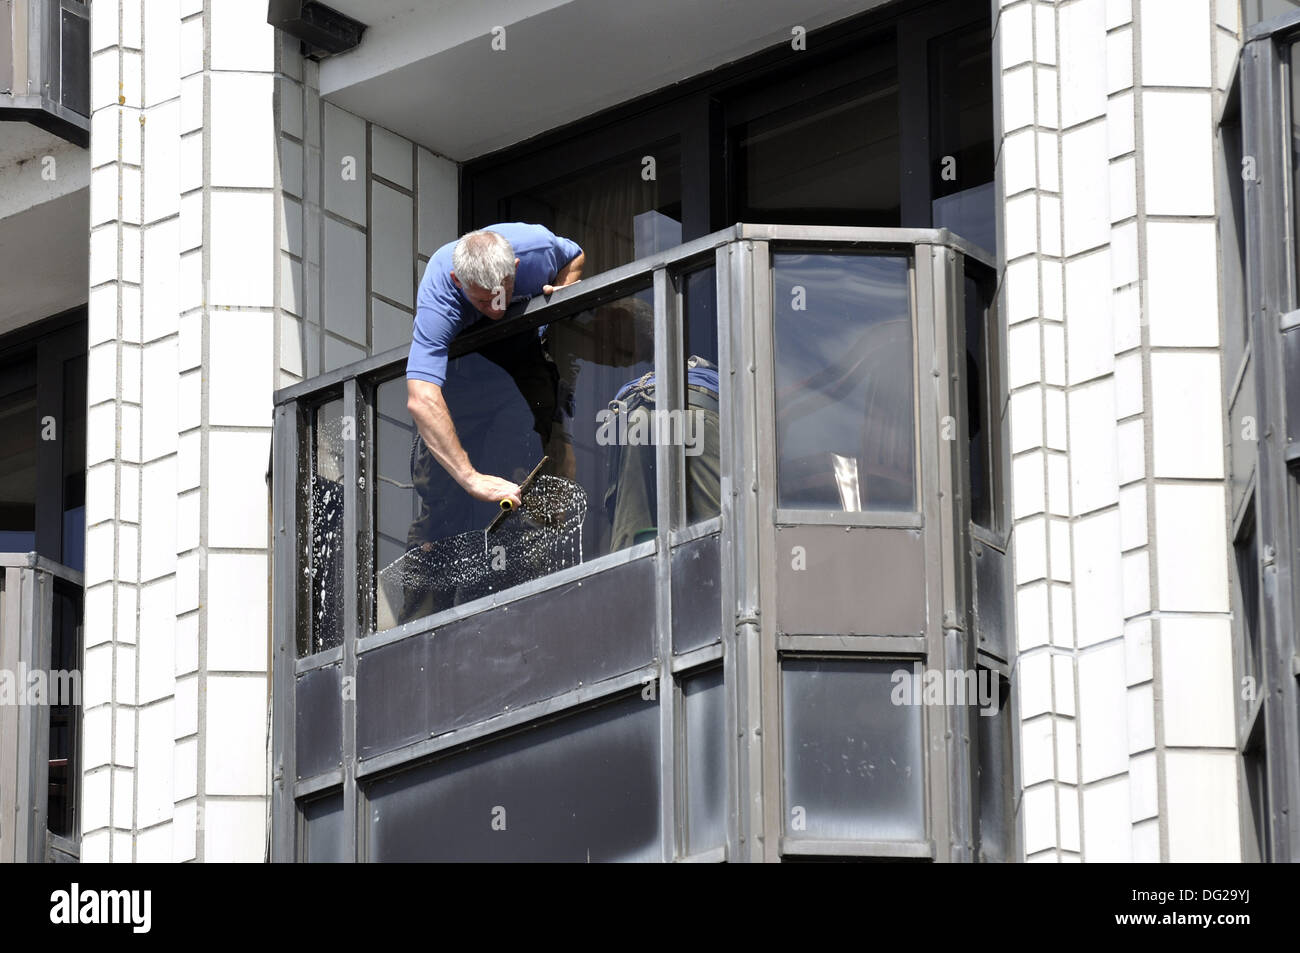 Nettoyage de vitres à l'extérieur Balcon vitres nettoyage Photo Stock -  Alamy